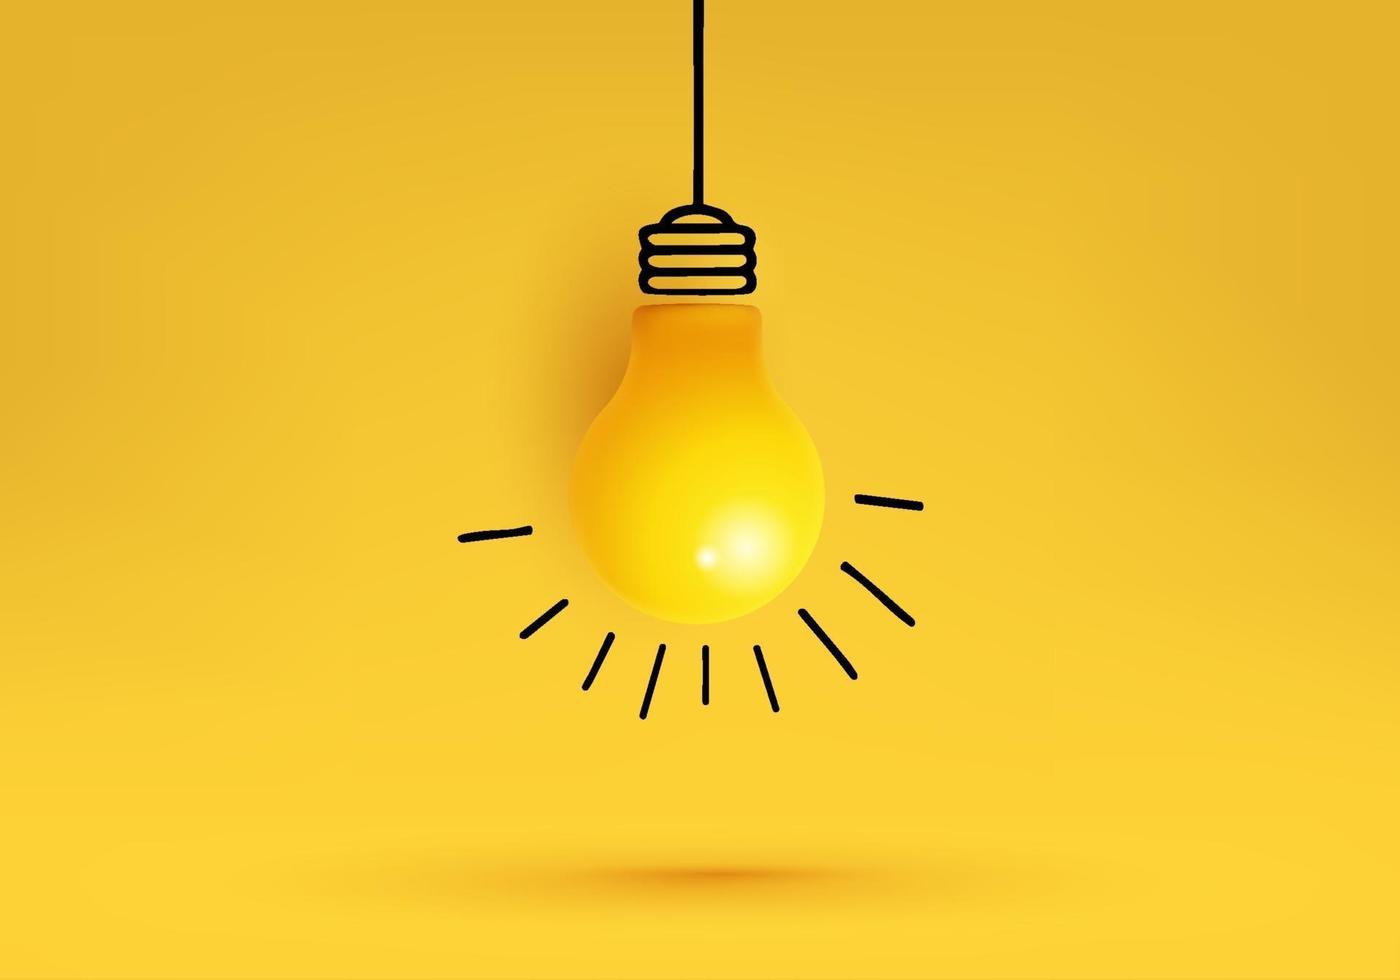 idée créative, inspiration, nouvelle idée et vecteur de concept d'innovation avec ampoule sur fond jaune.